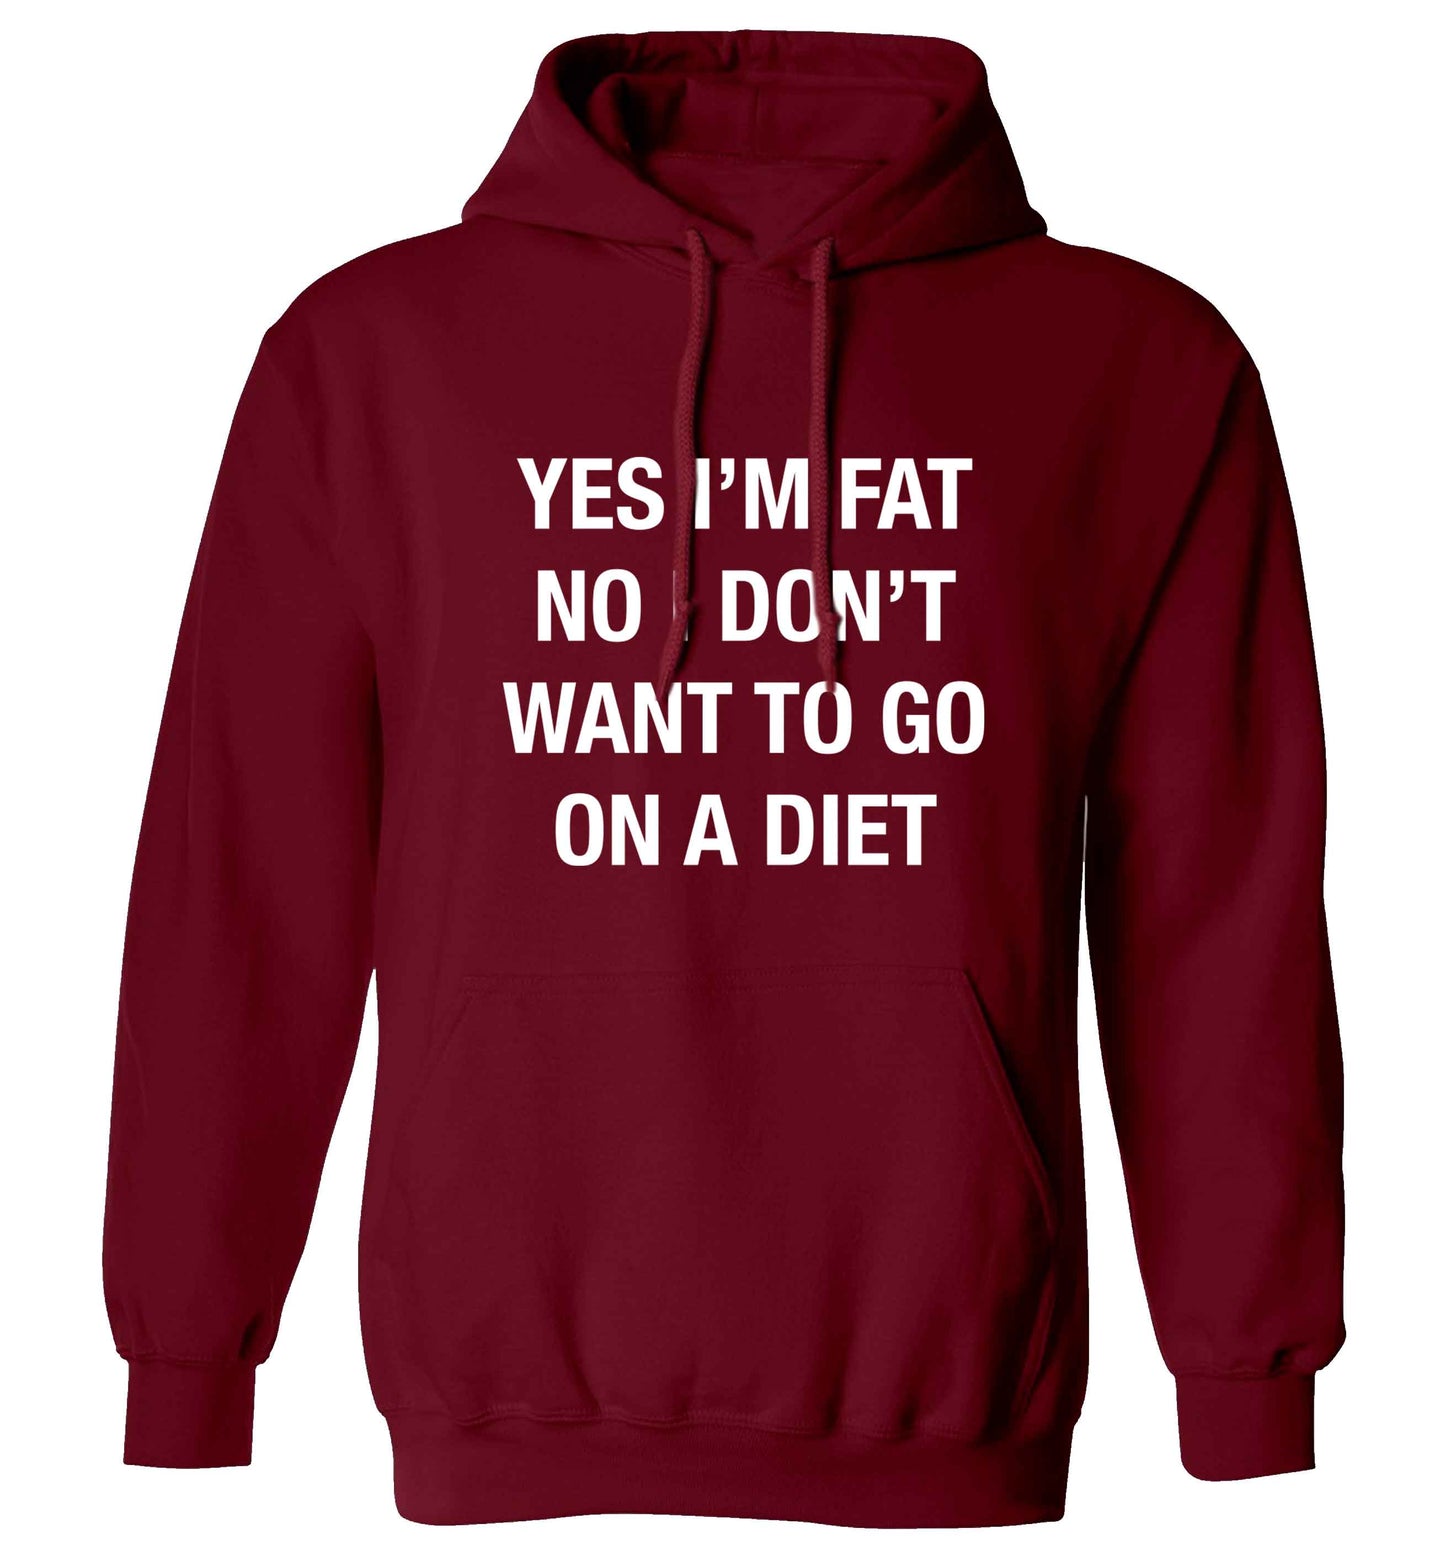 Yes I'm fat, no I don't want to go on a diet adults unisex maroon hoodie 2XL